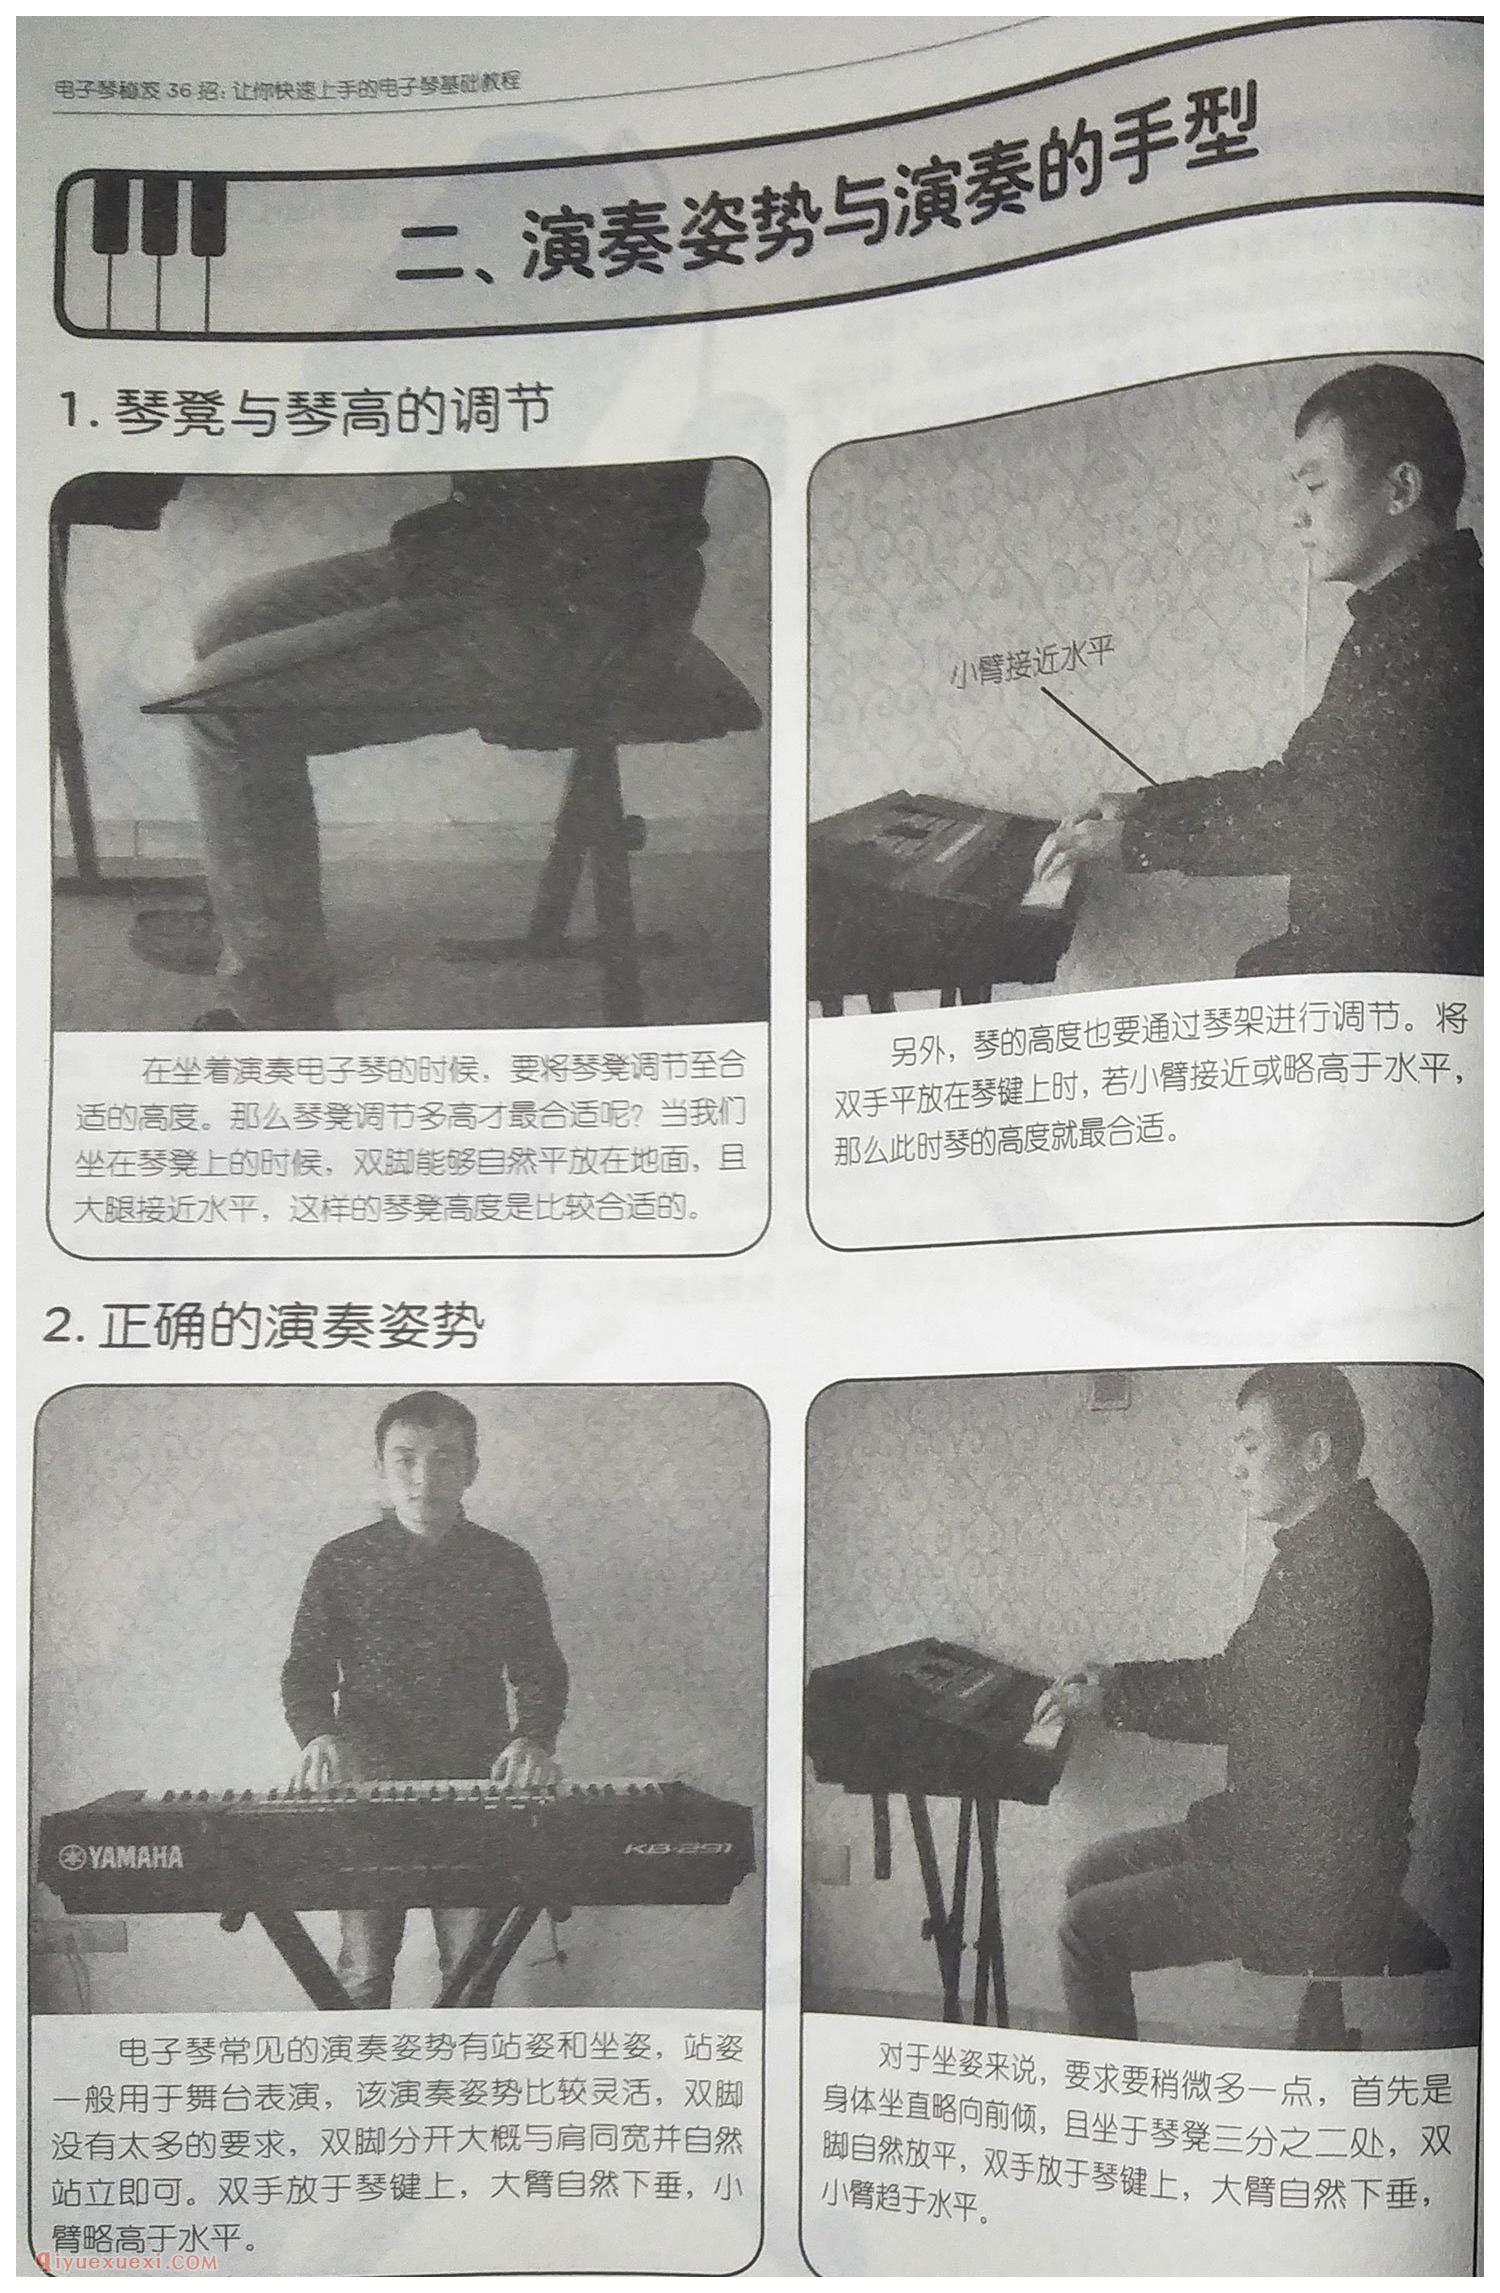 电子琴手型姿势教学